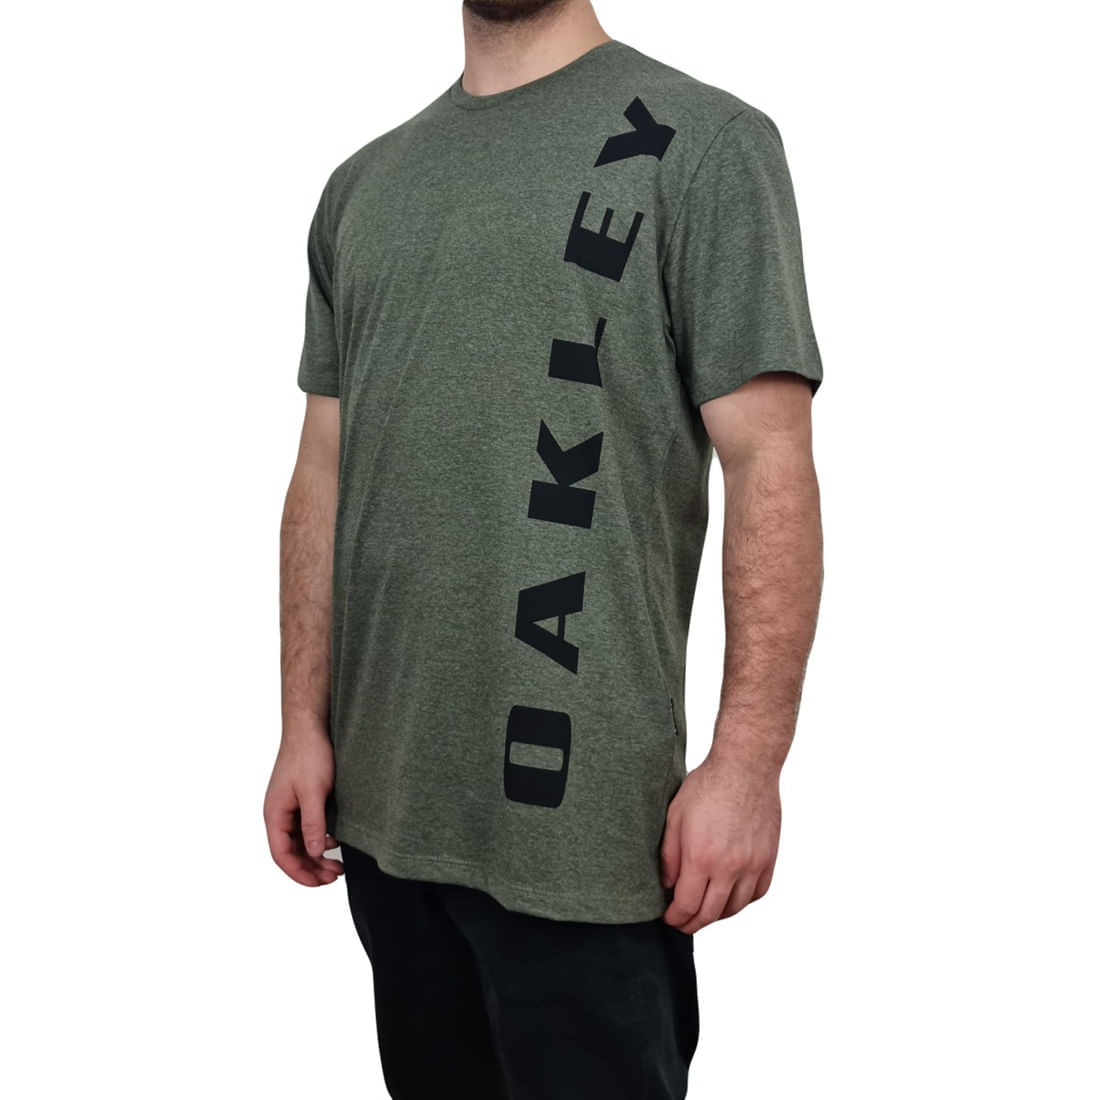 Camiseta Oakley Bark New Masculina - Verde